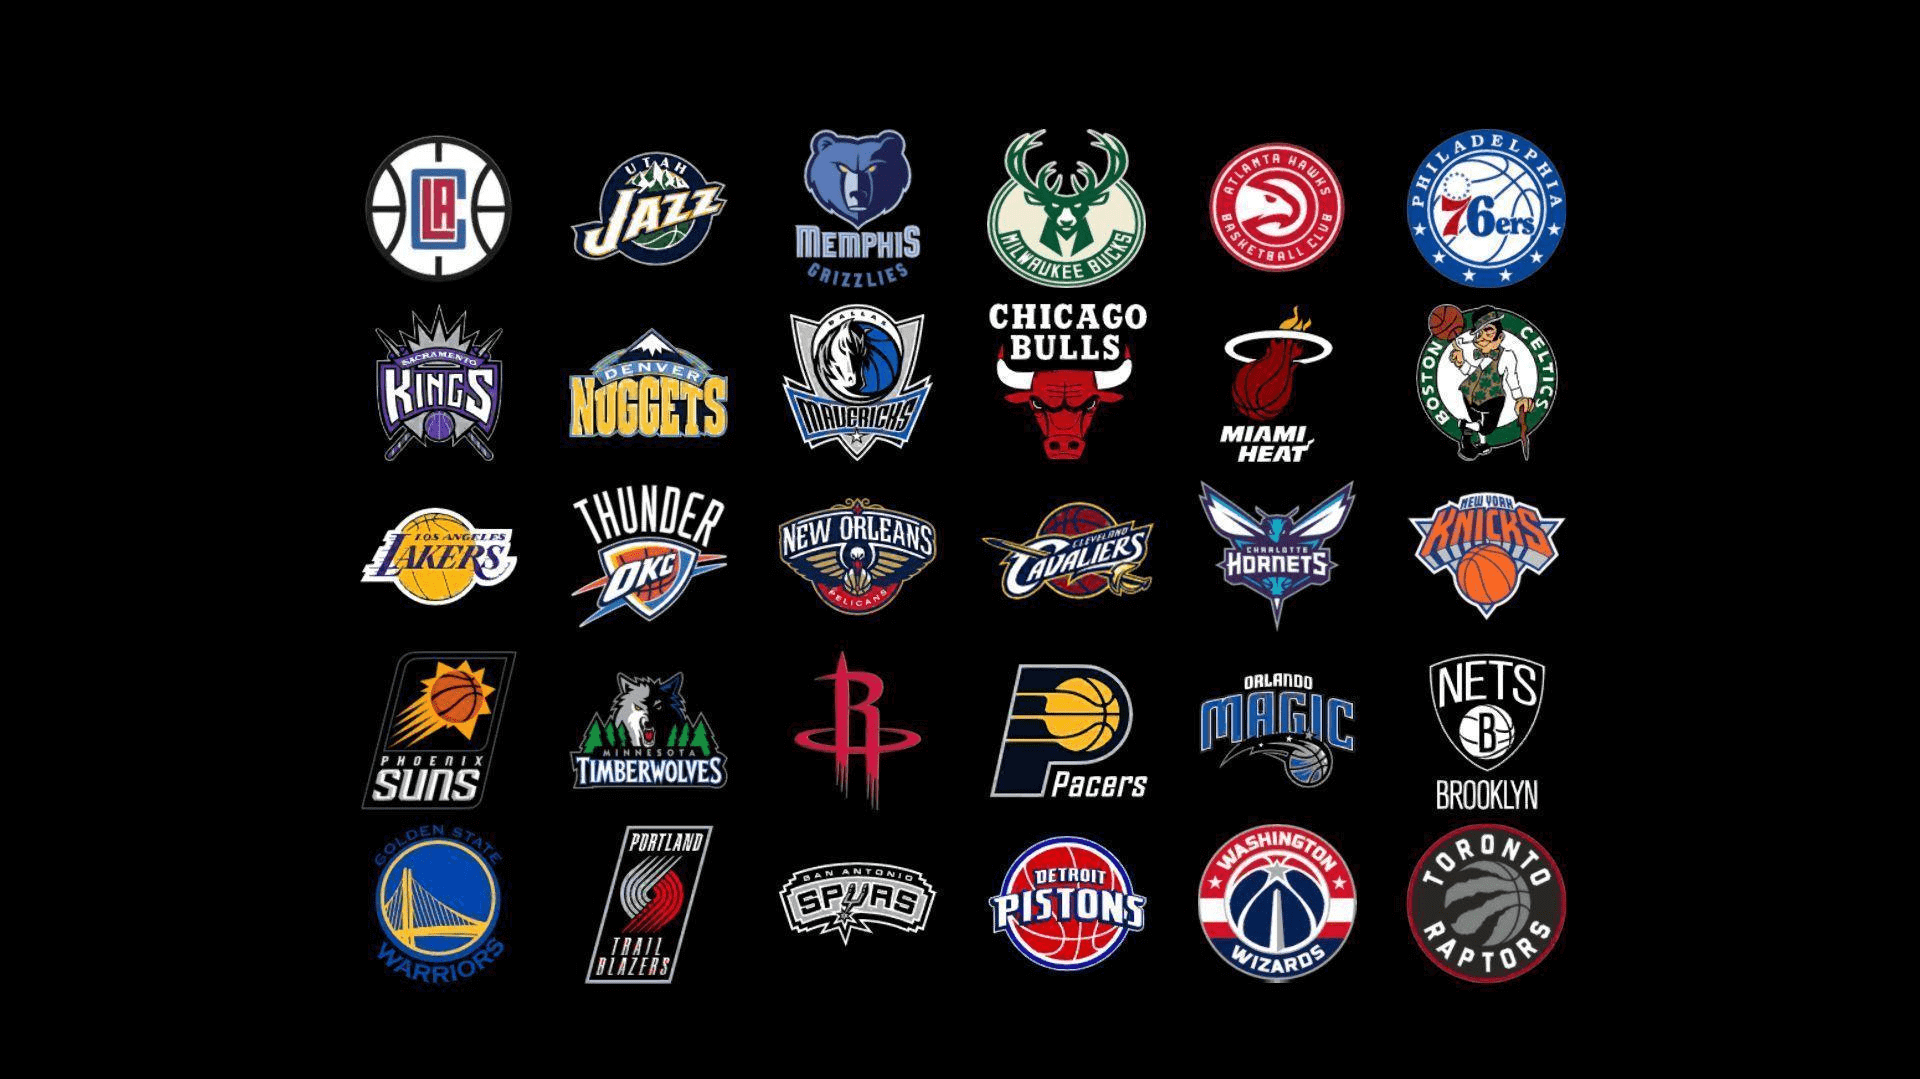 The Nba Team Logos Over Best Basketball Zenbusiness